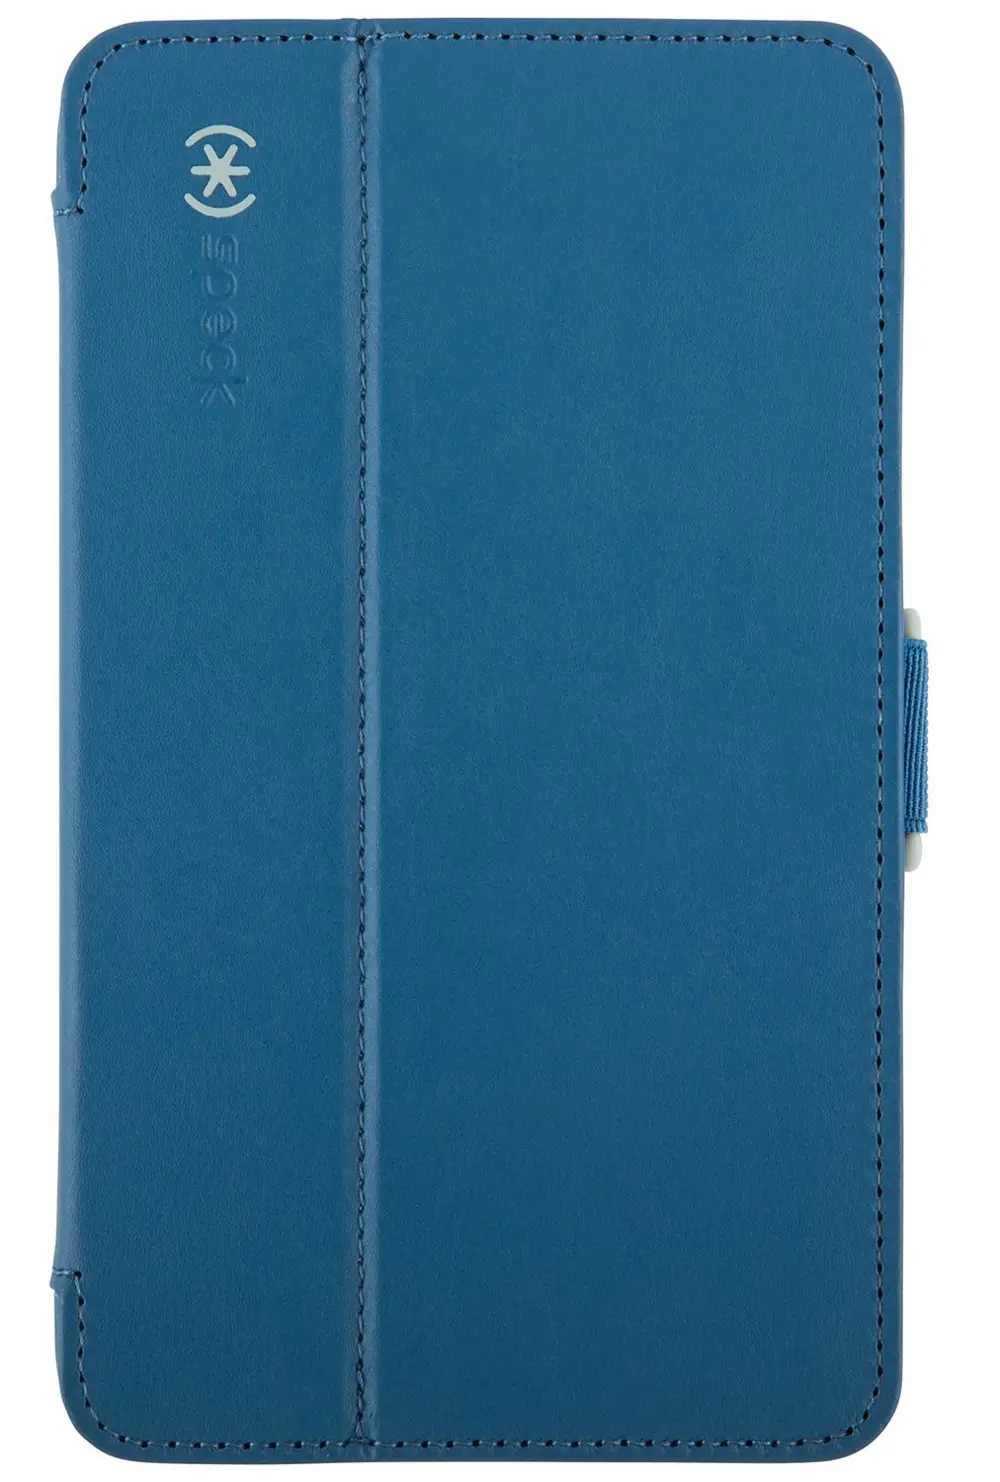 Speck StyleFolio Case for Samsung Galaxy Tab4 7.0 - Blue-1